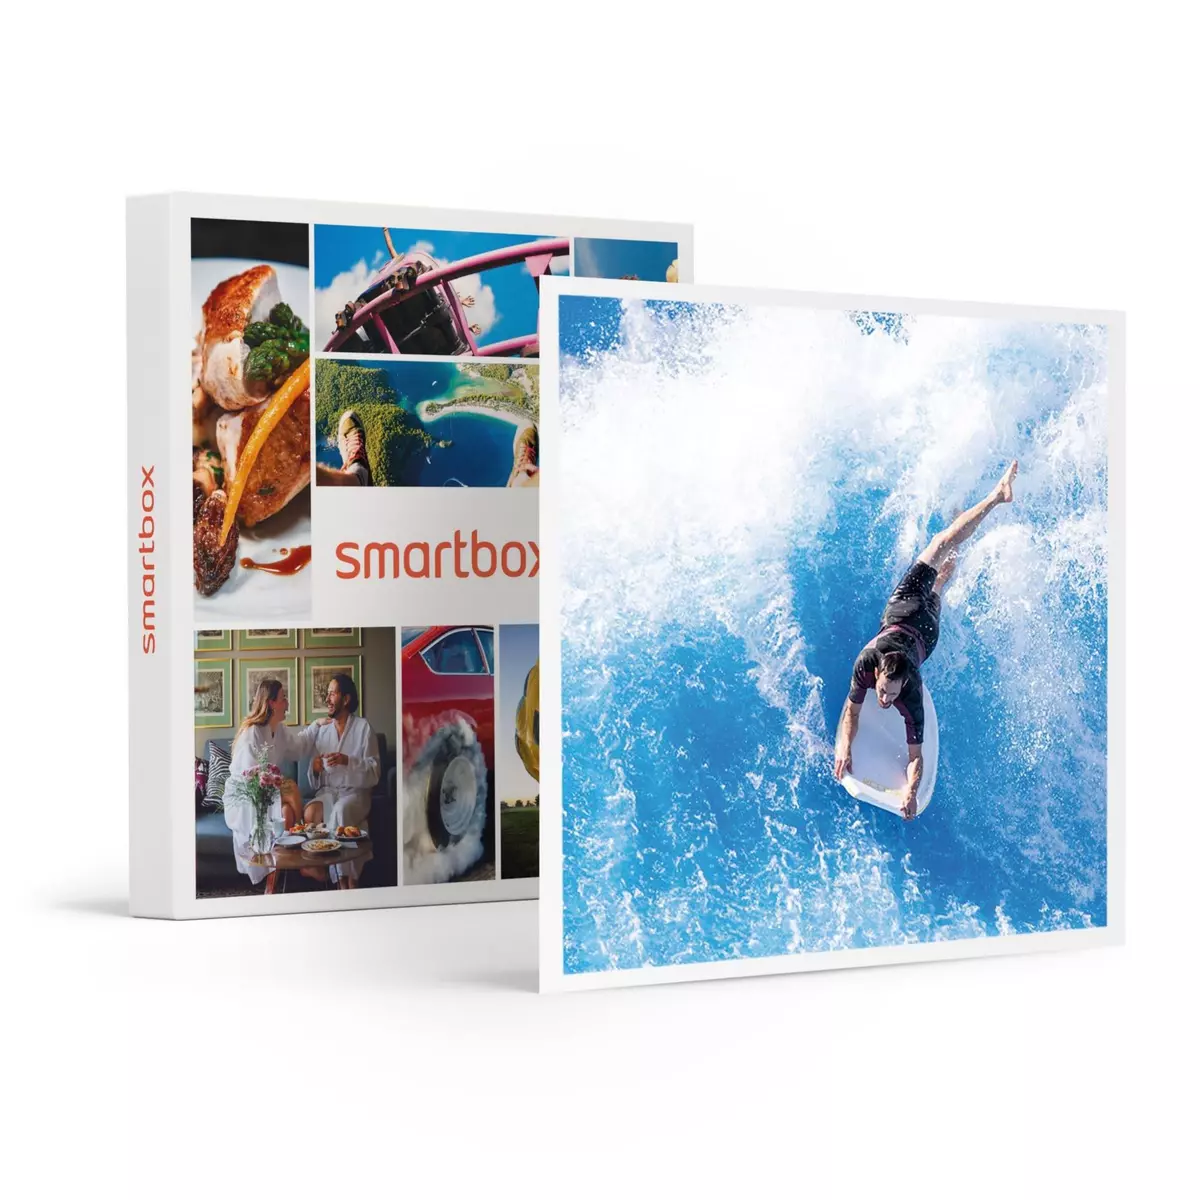 Smartbox Session de surf sur vague artificielle - Coffret Cadeau Sport & Aventure